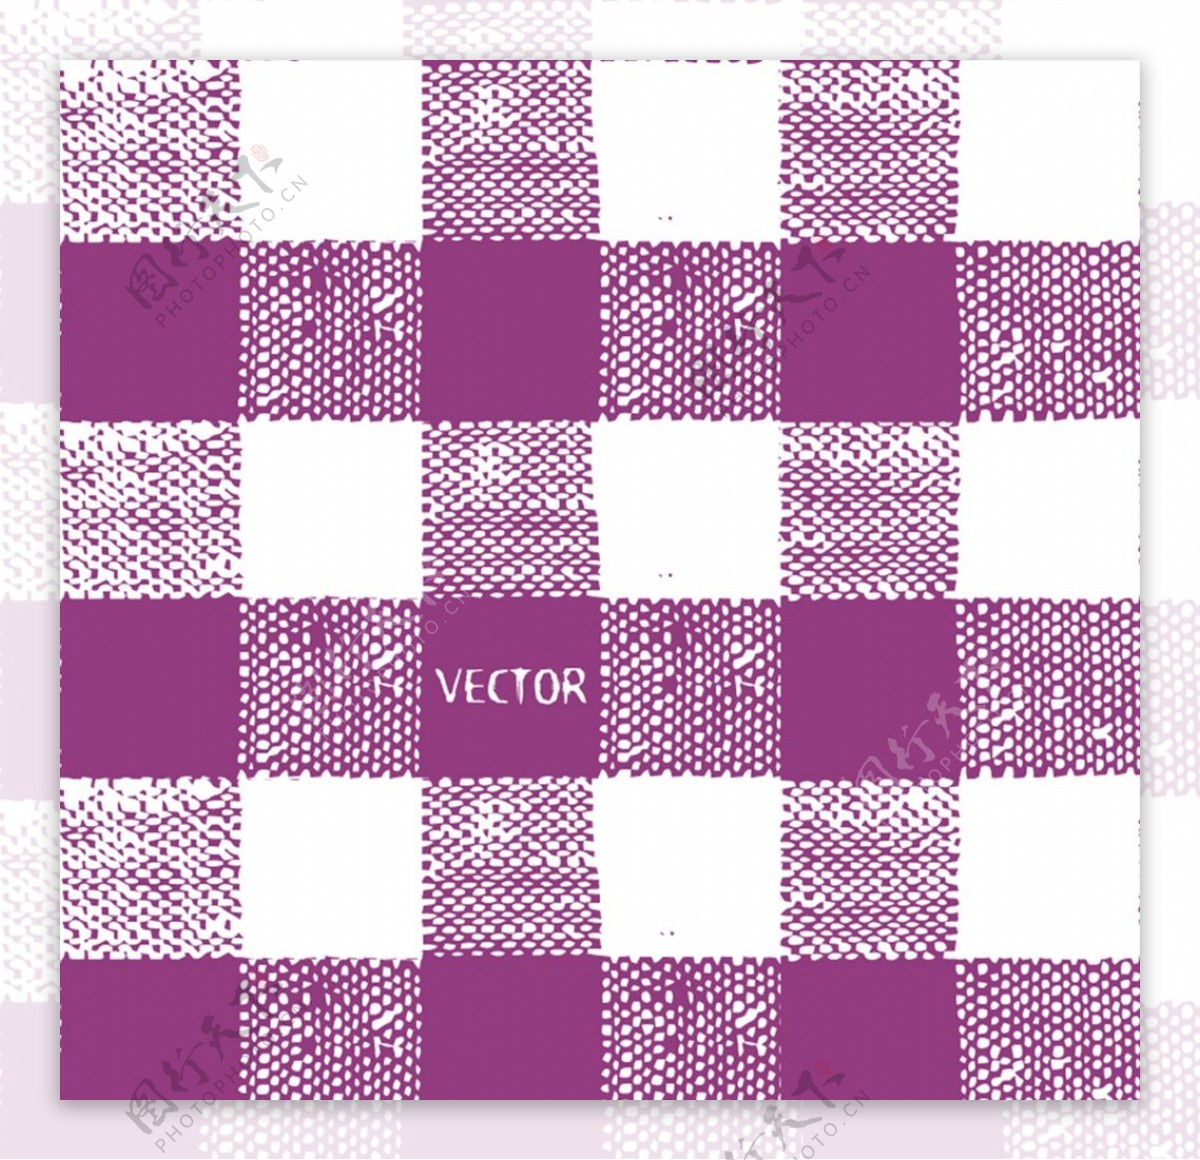 紫色格子布纹背景图片